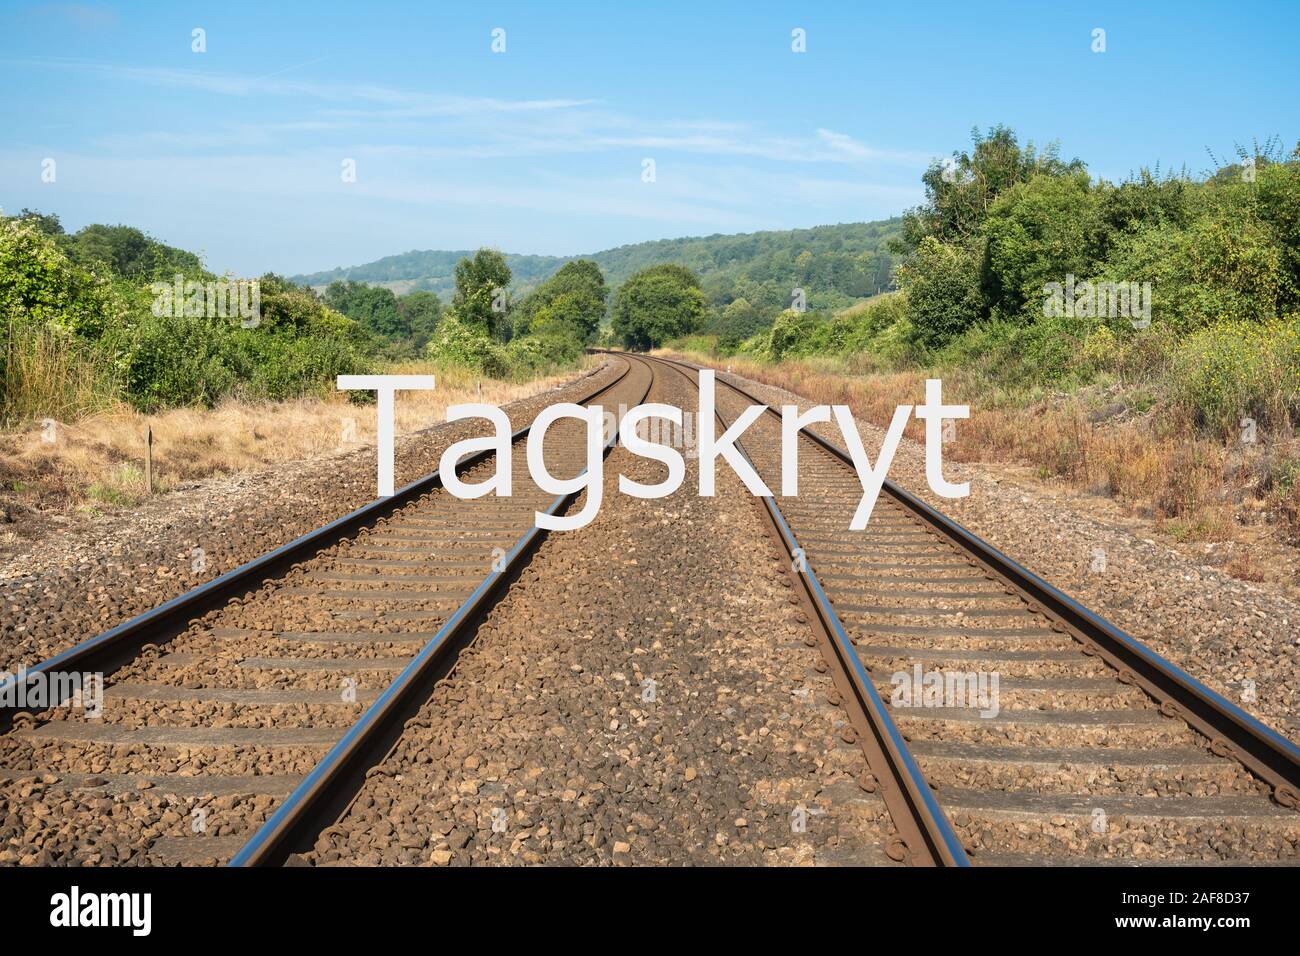 Tagskryt (Schwedisch für Bahn prahlen) Konzept Bild - mit Zügen, statt zu fliegen für reduziert CO2-Footprint travel Stockfoto